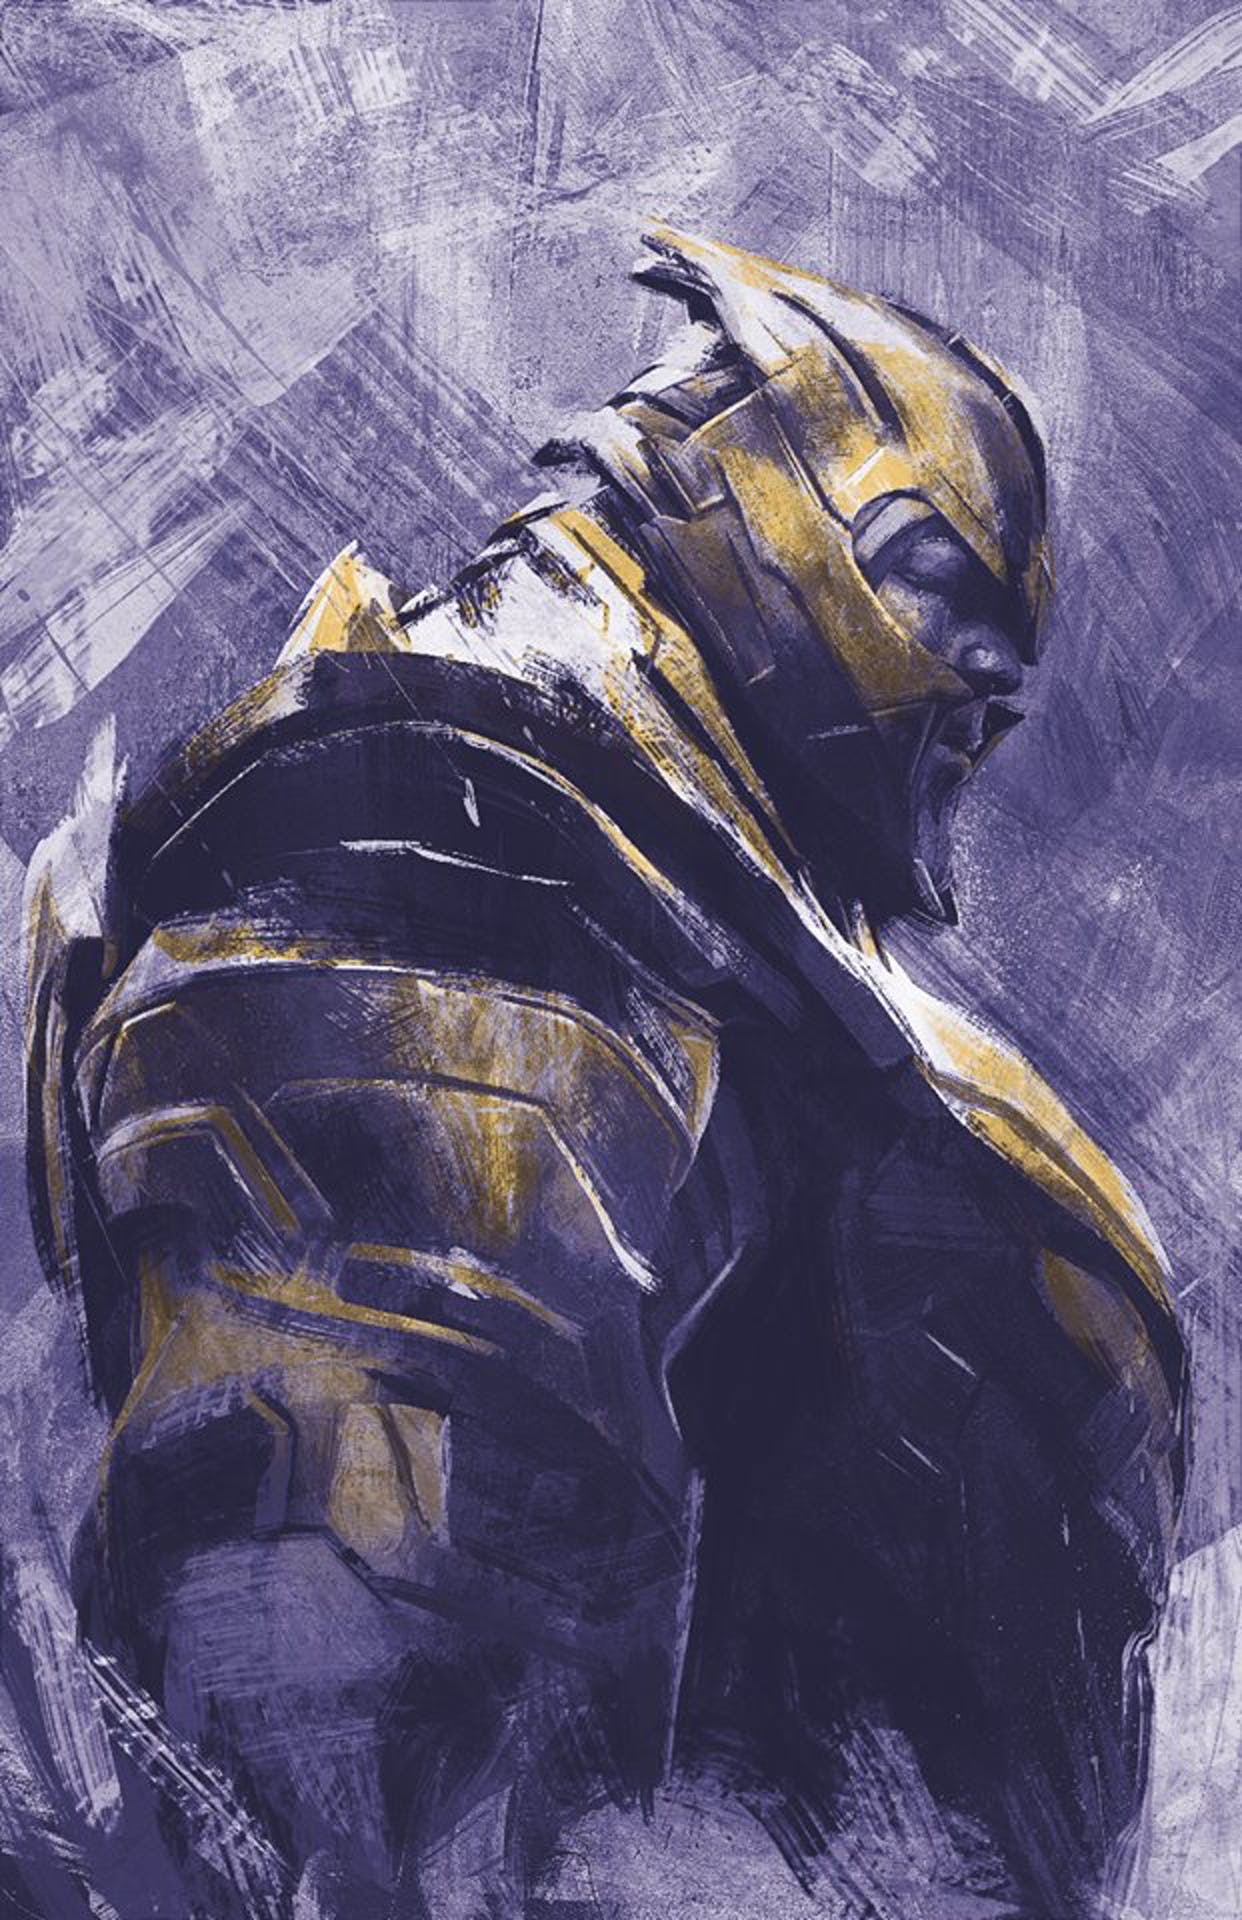 Avengers Endgame Leaks Promo Art Reveals New Details For Thanos